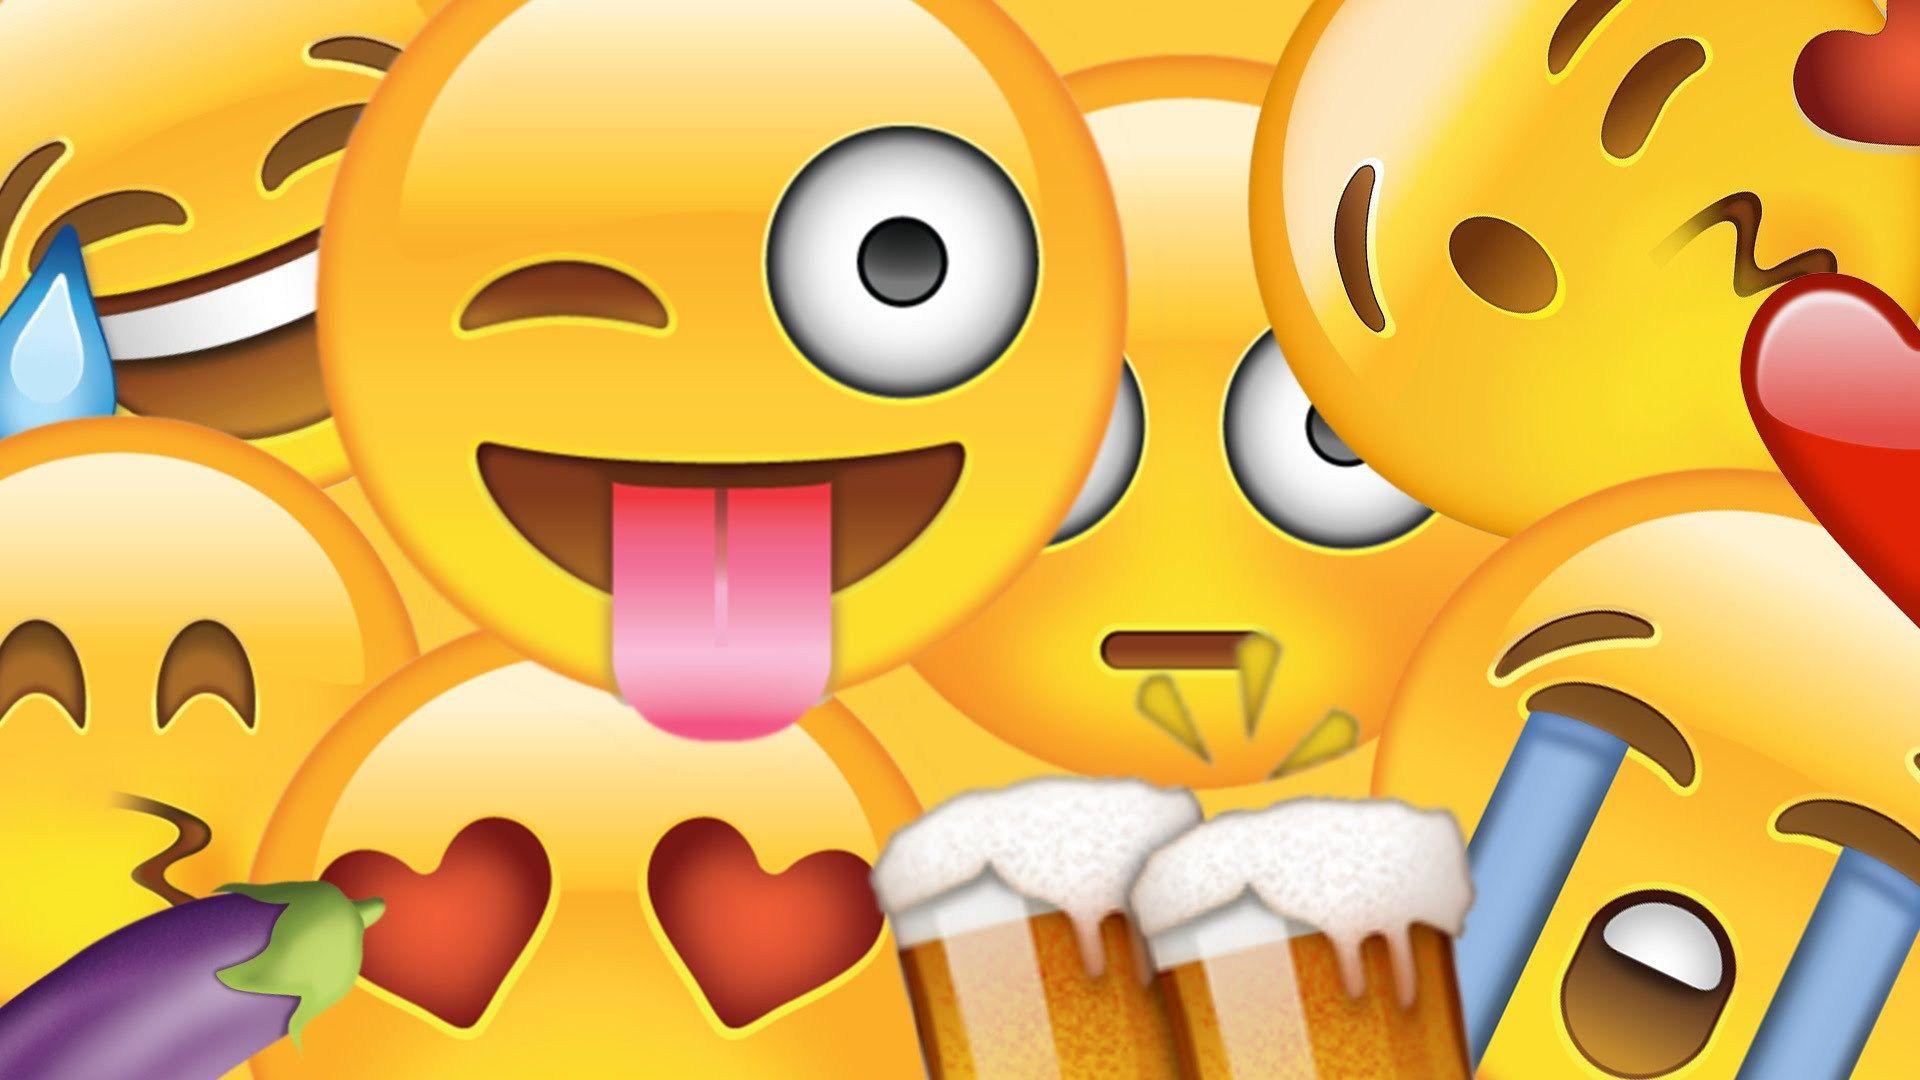 HD Emoji Wallpaper